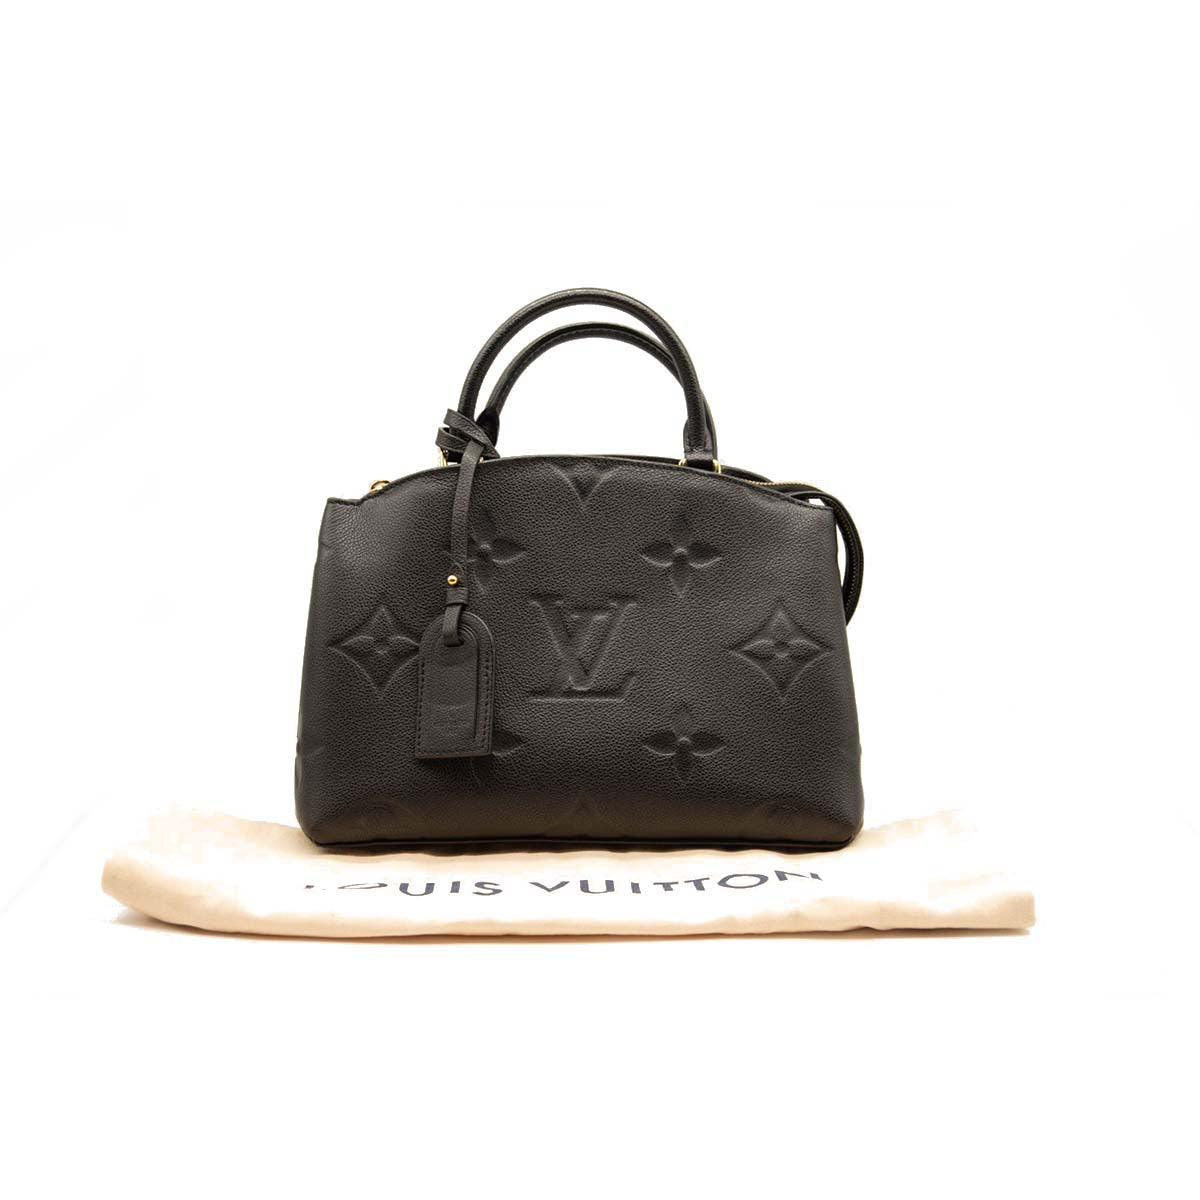 Louis Vuitton Black Empreinte Leather Wild at Heart Speedy